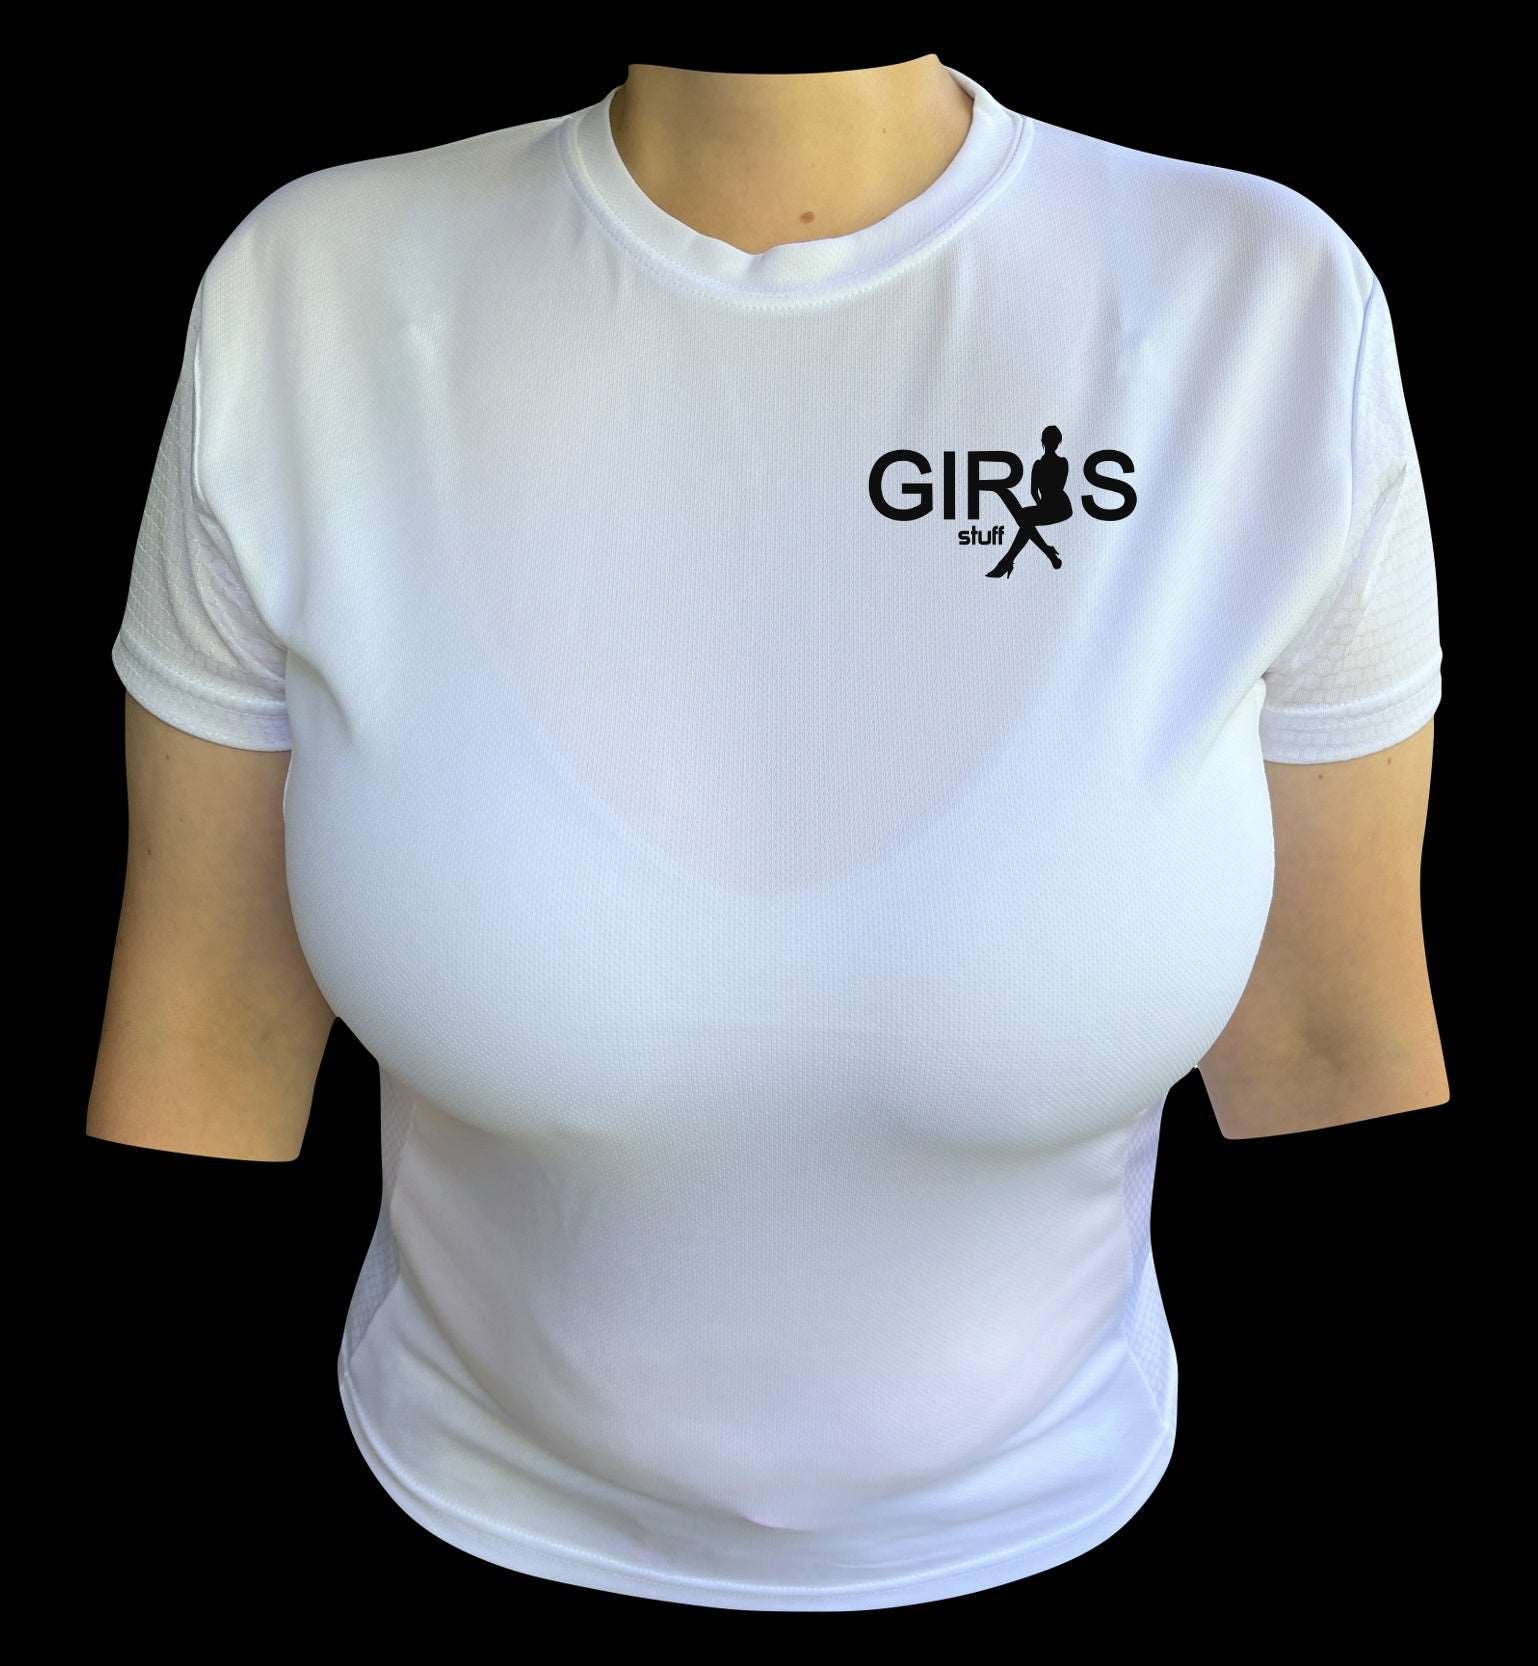 Girl's Motivational T-Shirt Designs